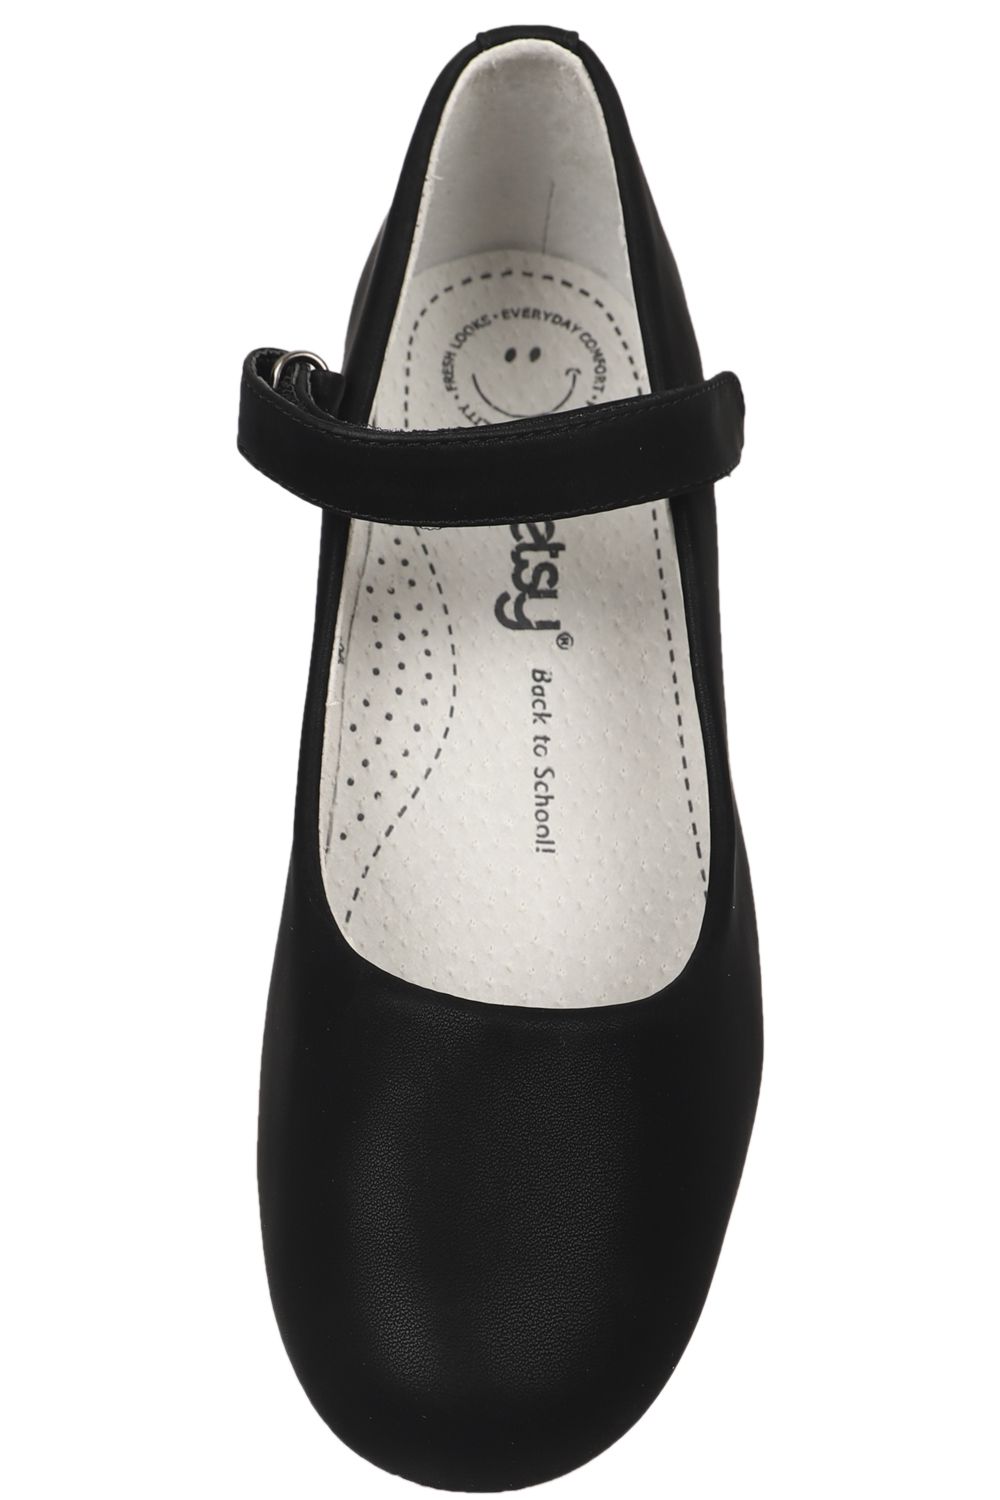 Туфли Betsy, размер 33, цвет черный 908311/03-03 - фото 5